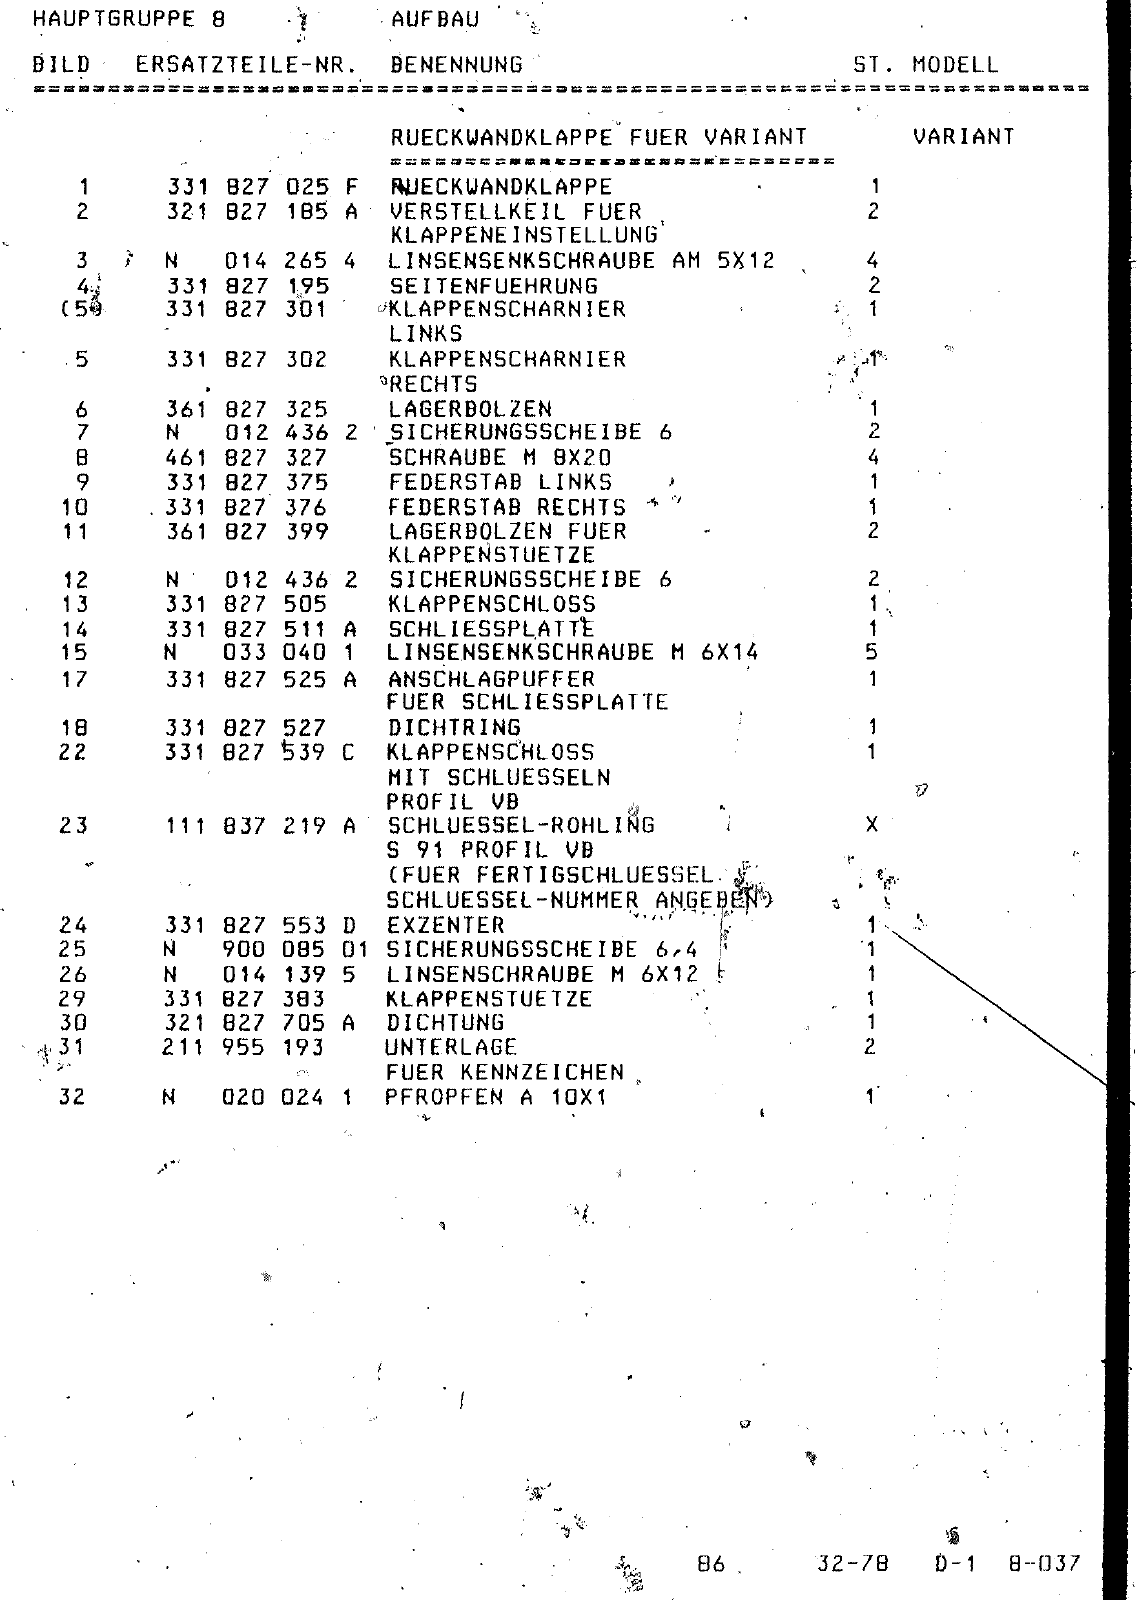 Vorschau Passat Mod 78-80 Seite 588